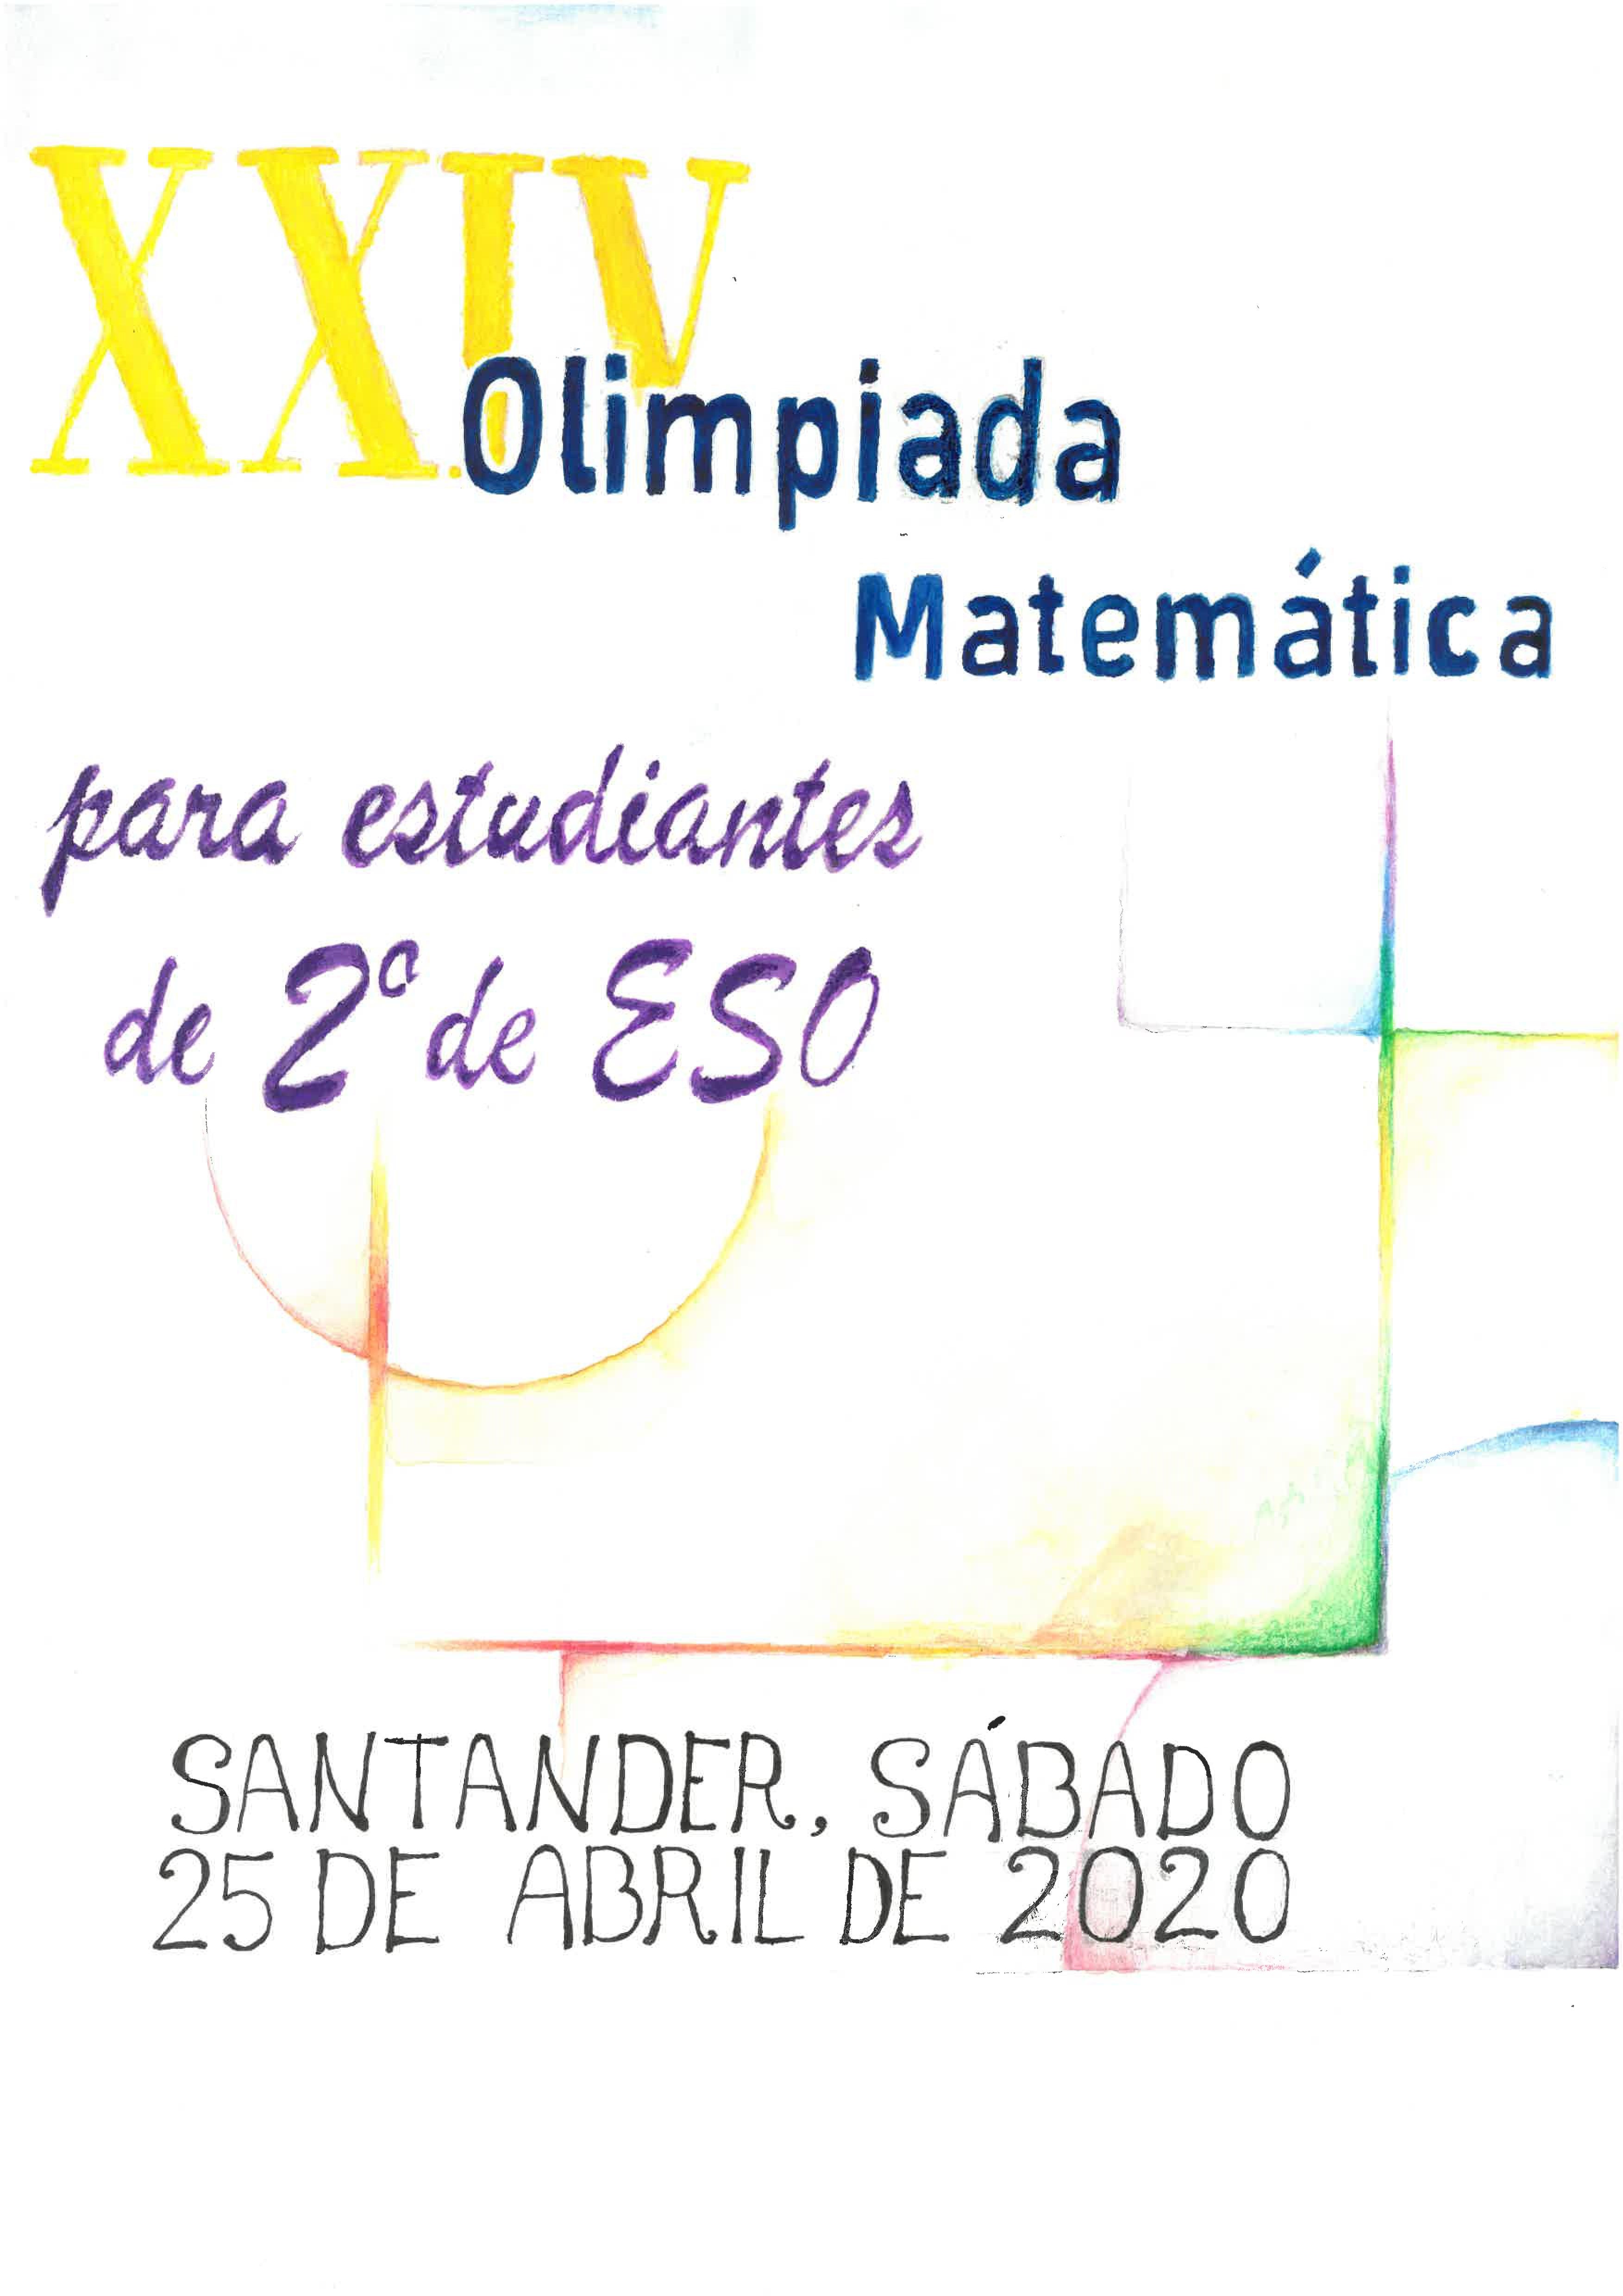 XXIV Olimpiada Matemática